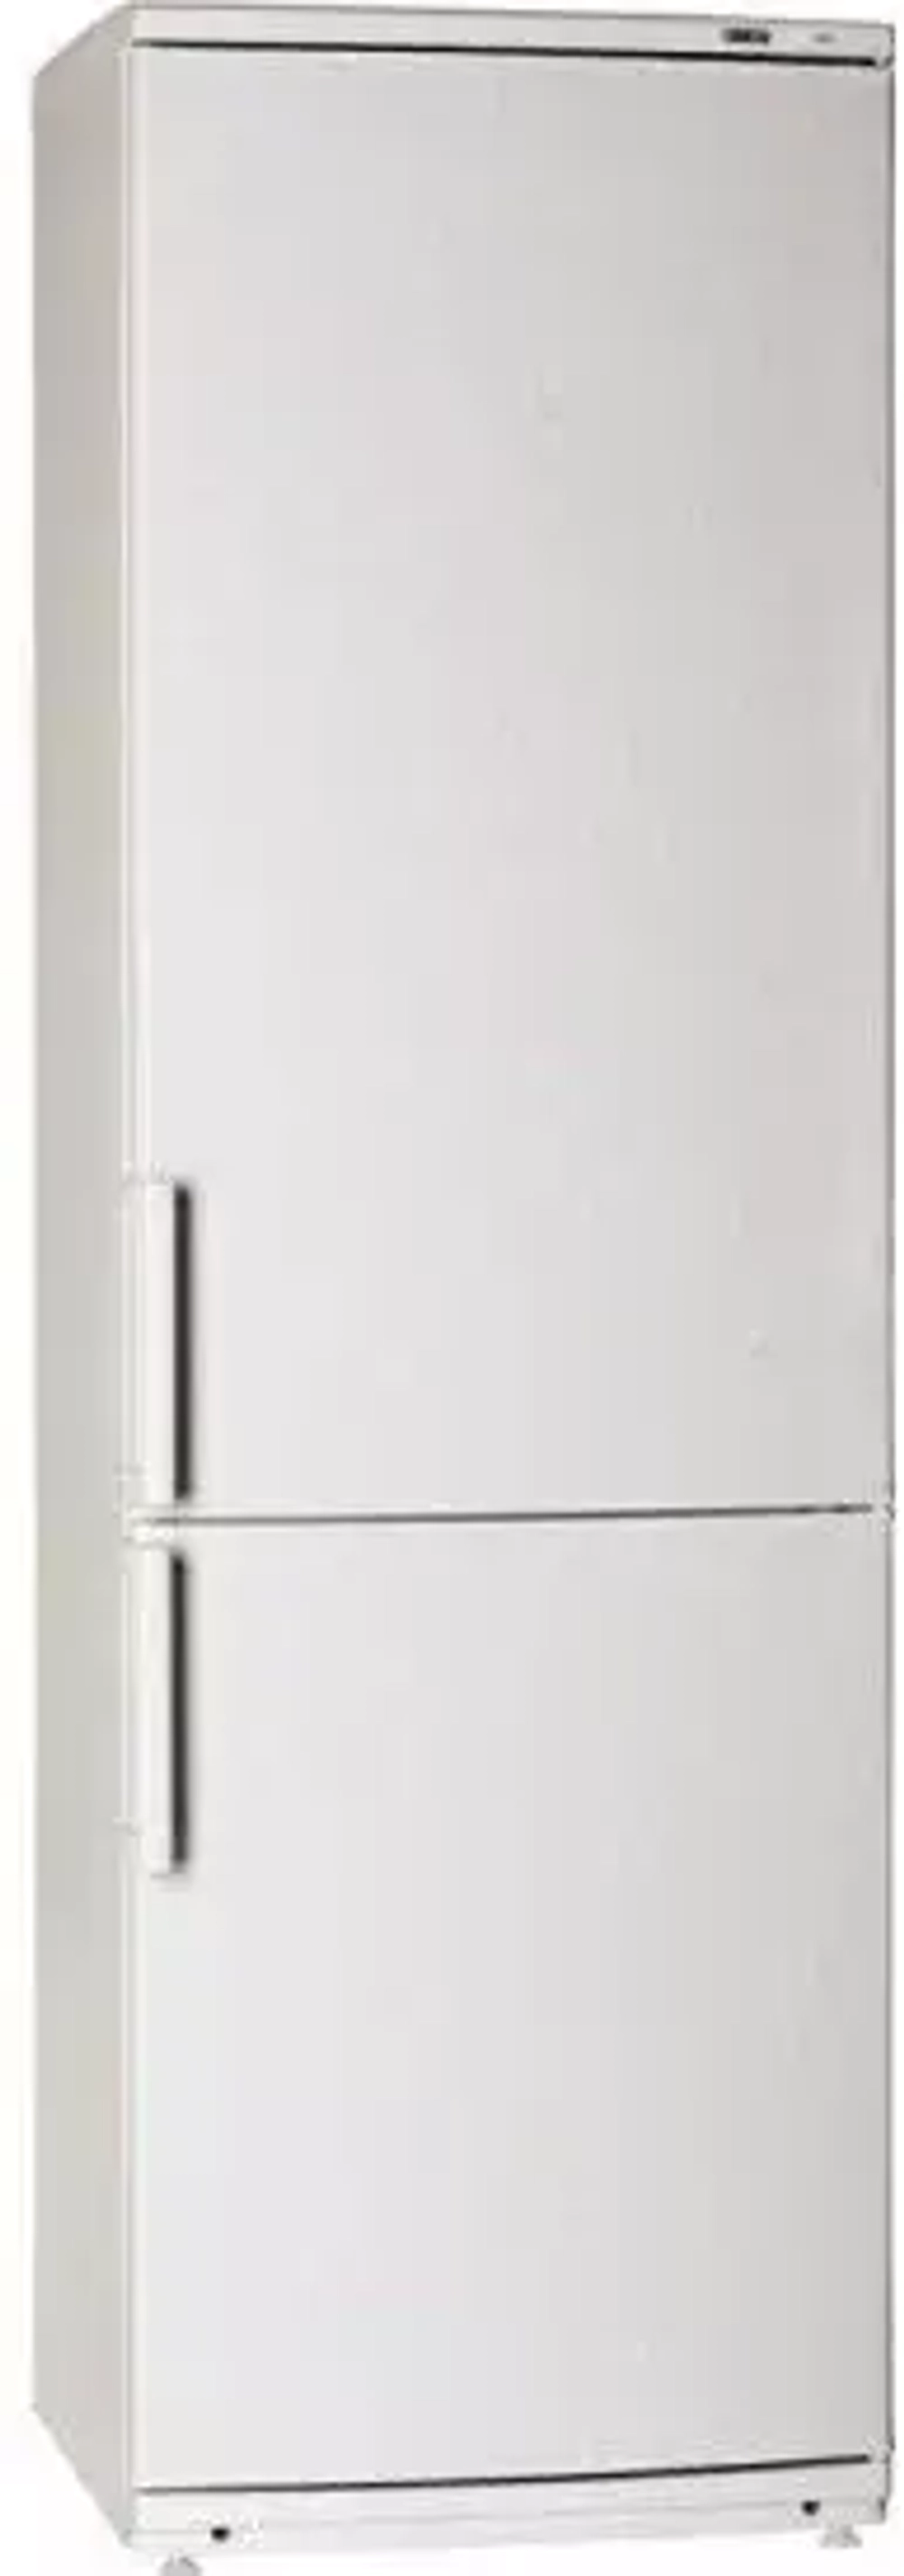 Холодильник с нижней морозильной камерой Atlant ХМ4024-000 (MLN)